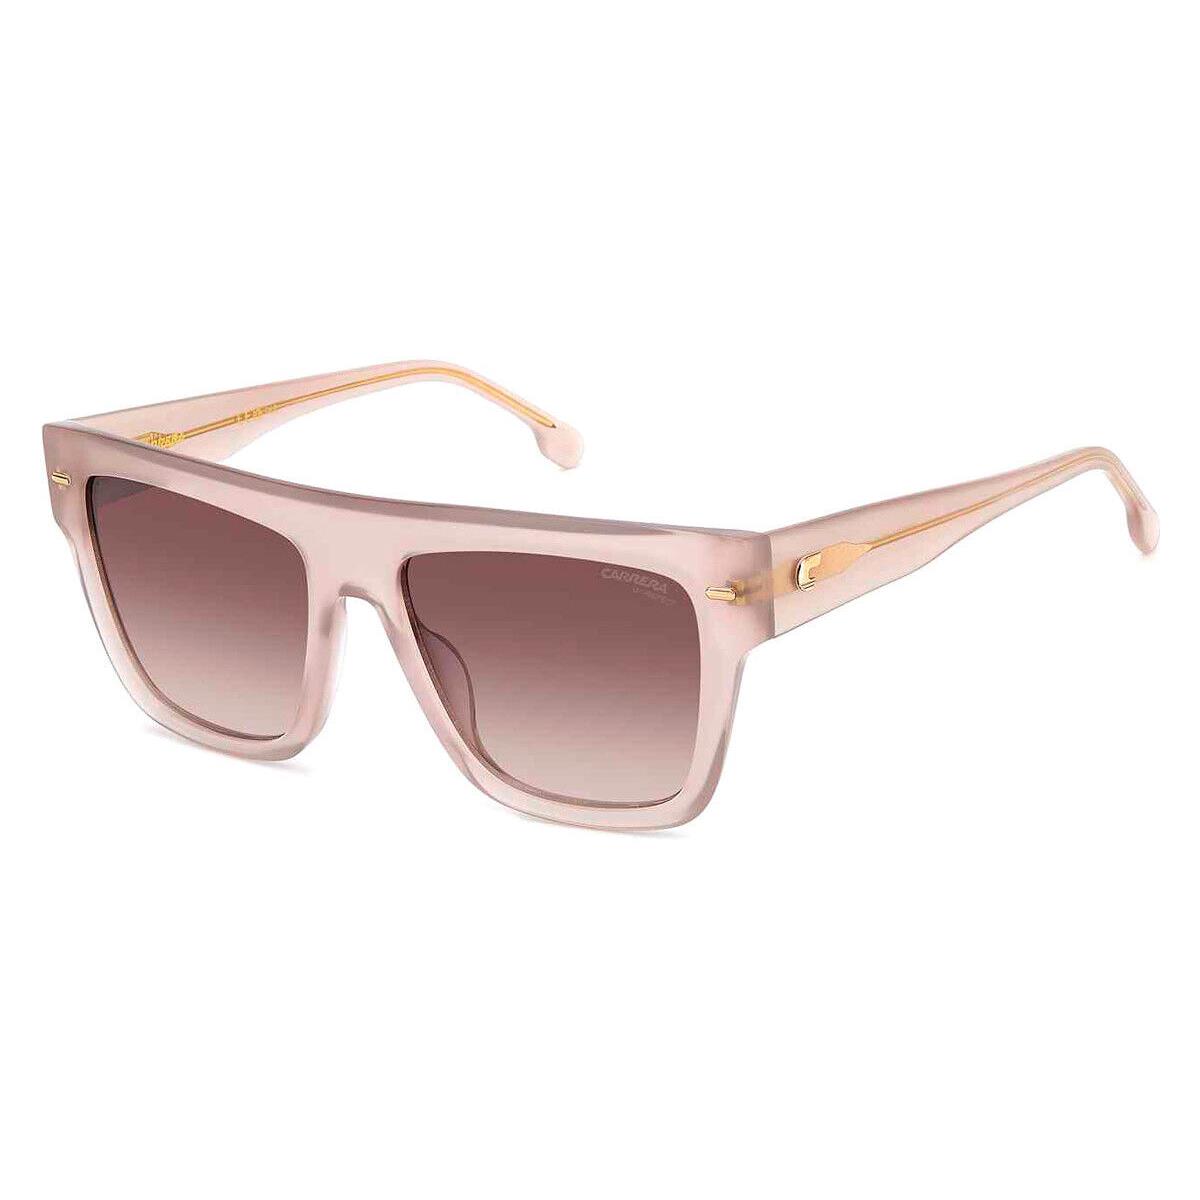 Carrera Car Sunglasses Women / Brown Gradient 55mm